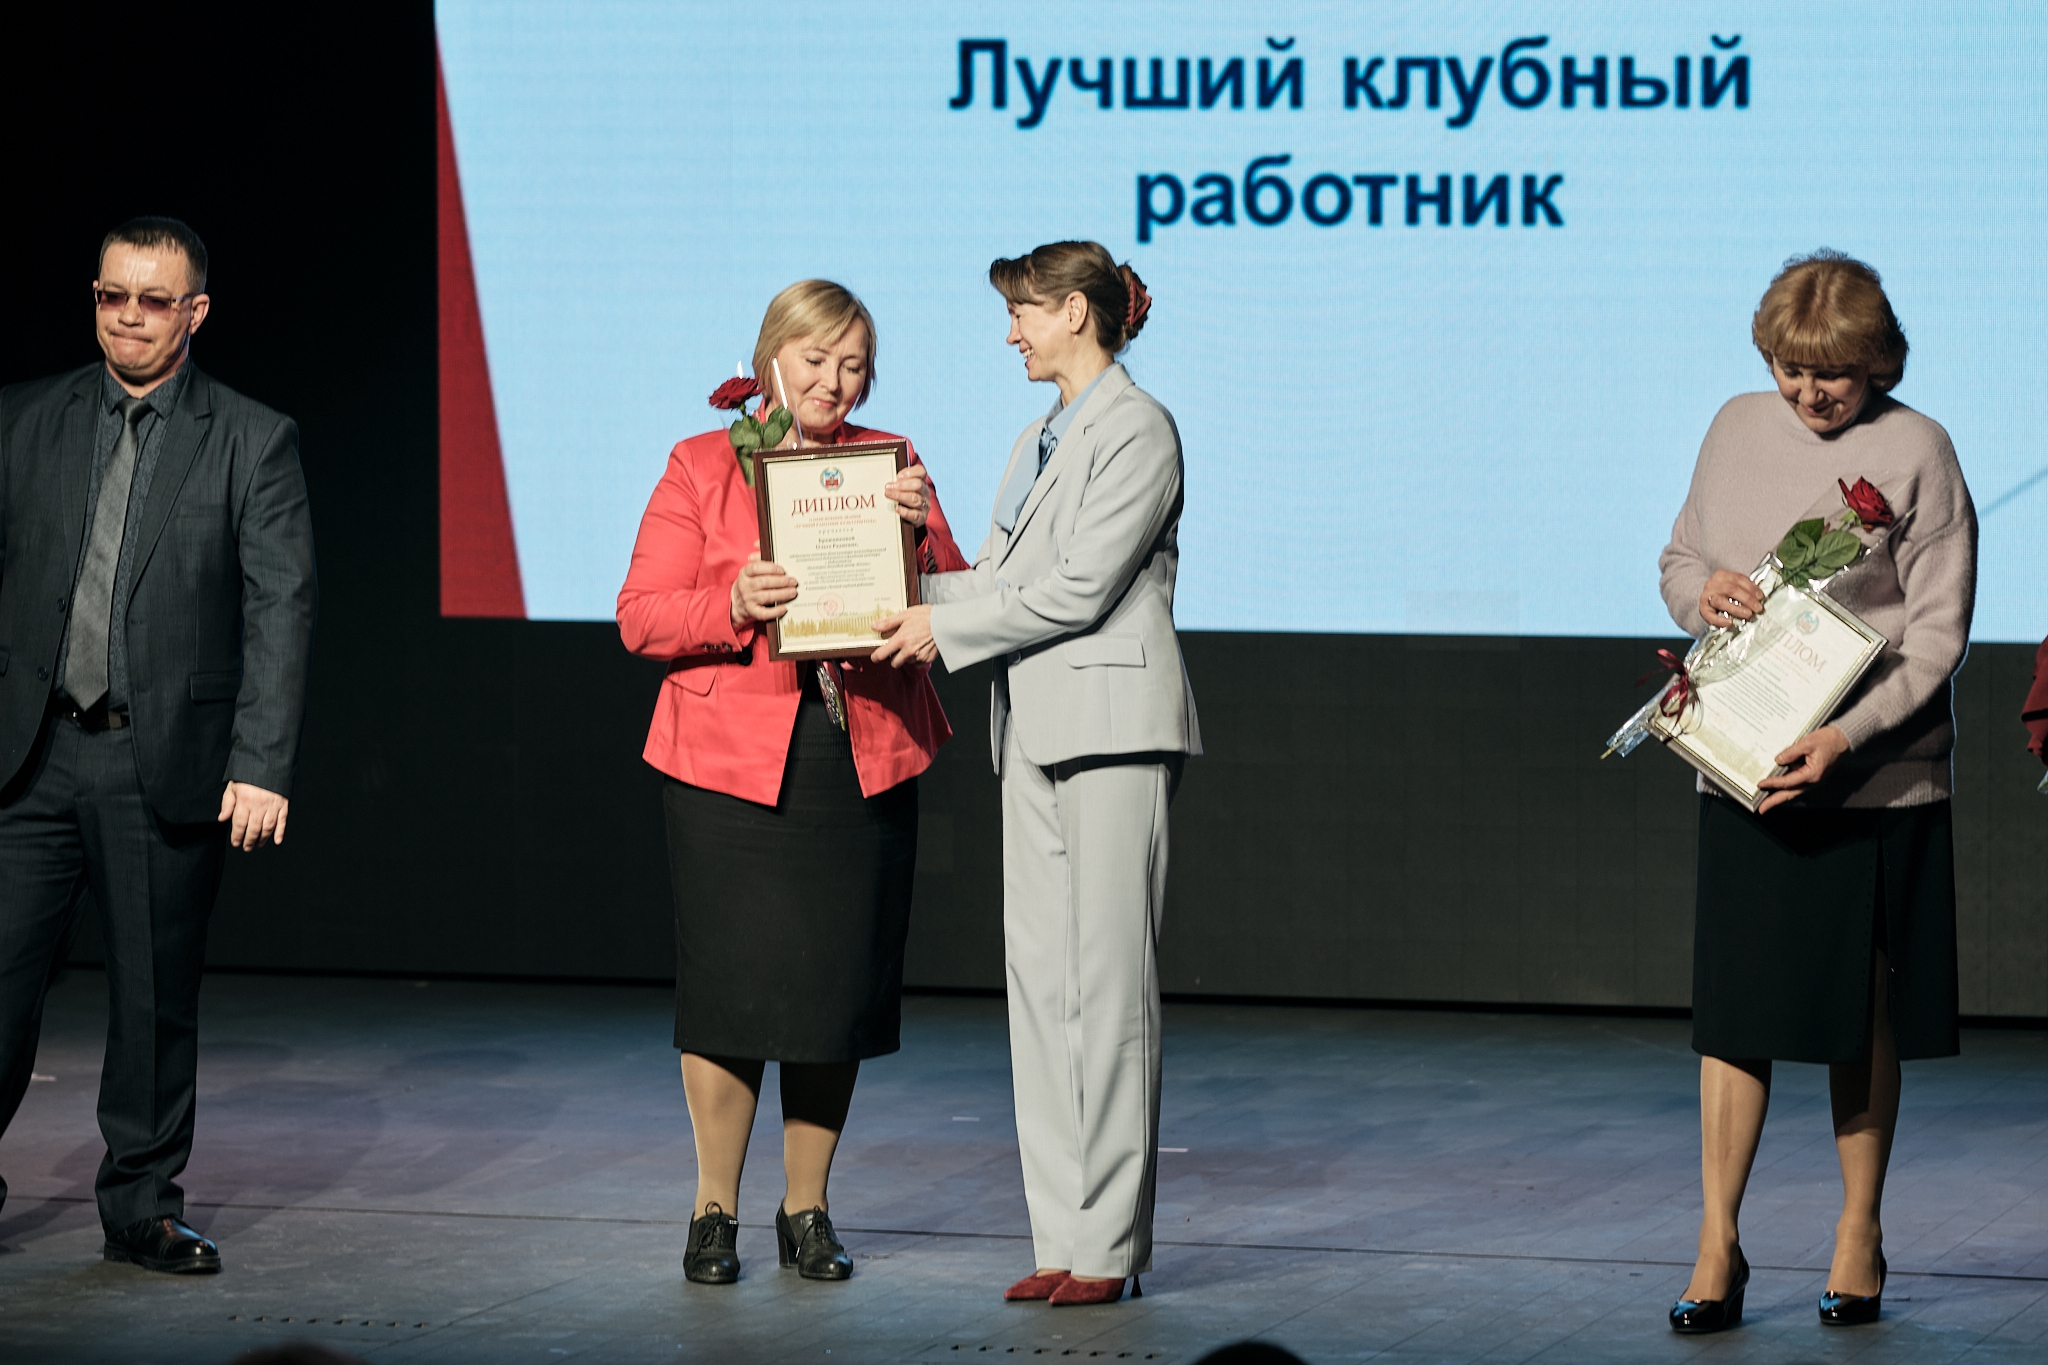 Ольга Бражникова стала победителем в номинации «Лучший клубный работник».